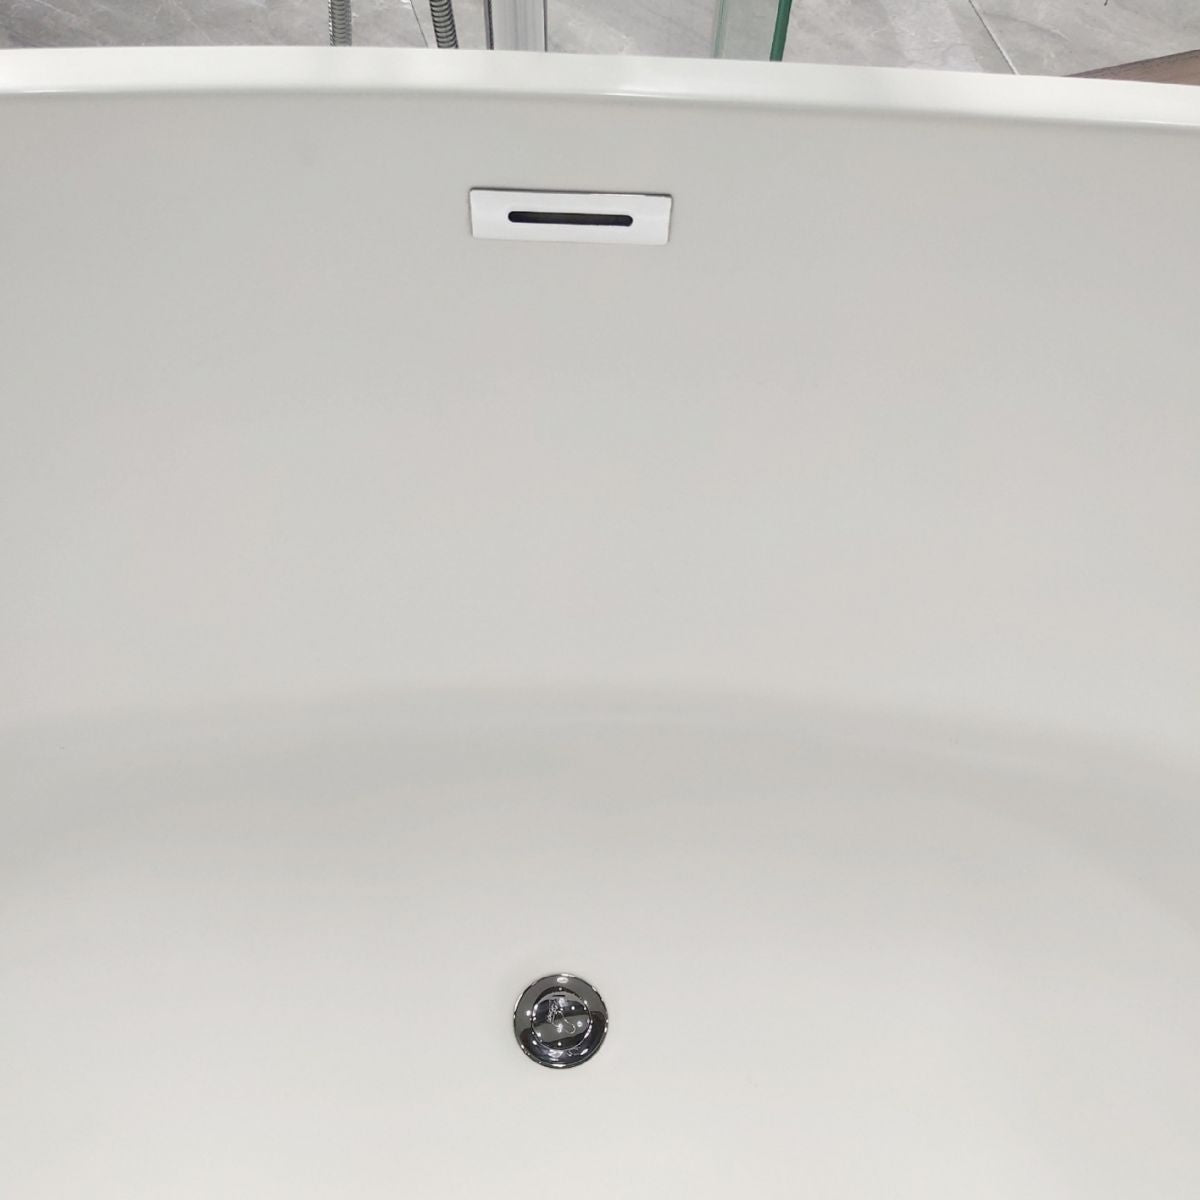 Acrylic Freestanding Soaking Bathtub Antique Finish Oval Modern Bath Tub Clearhalo 'Bathroom Remodel & Bathroom Fixtures' 'Bathtubs' 'Home Improvement' 'home_improvement' 'home_improvement_bathtubs' 'Showers & Bathtubs' 1200x1200_a2024107-73a5-4ee1-9cb0-97bd285ef51c